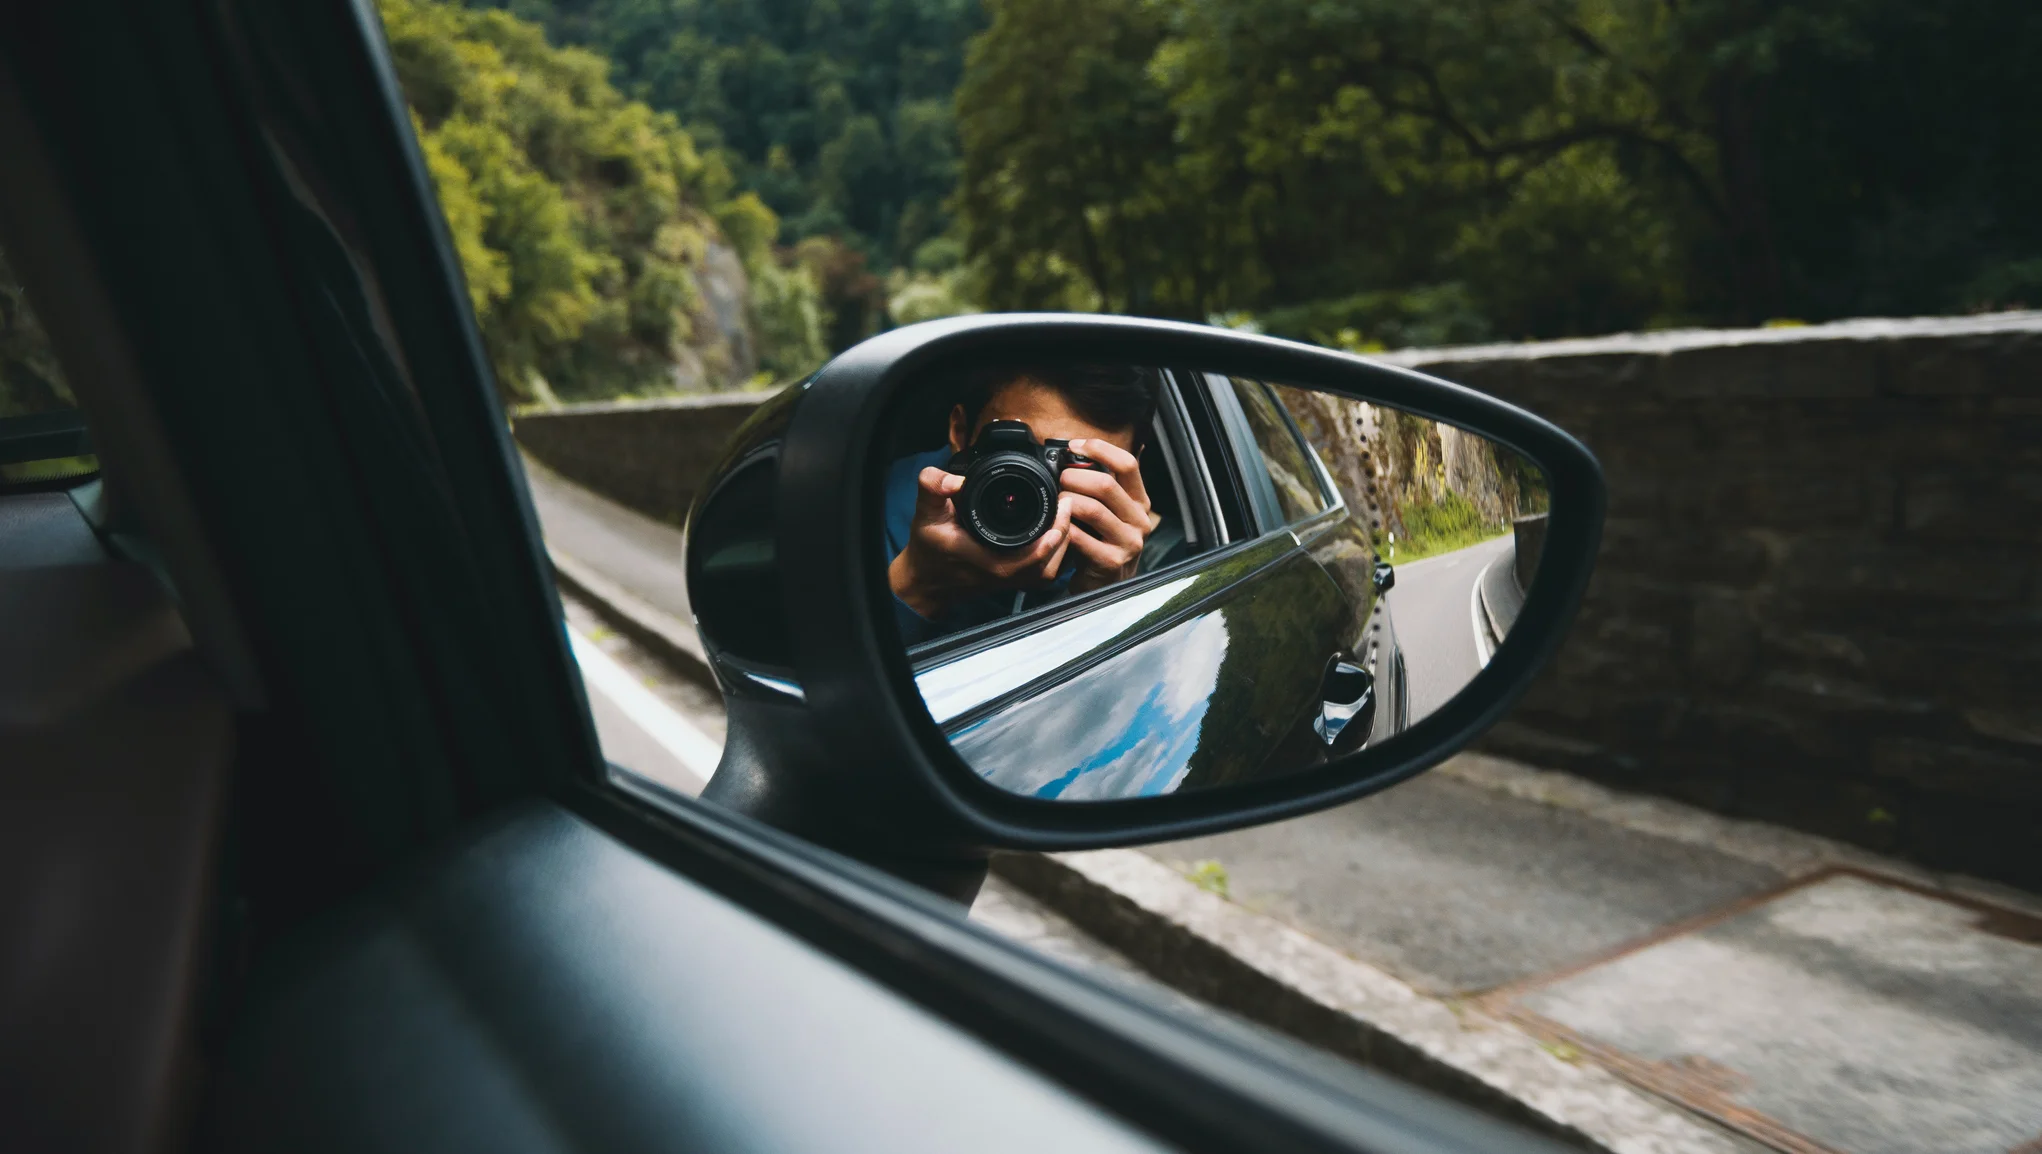 Elektromobilio keleivio vietoje sėdintis žmogus fotografuoja vaizdą už lango ir veidrodėlyje matosi jo kameros atspindys.